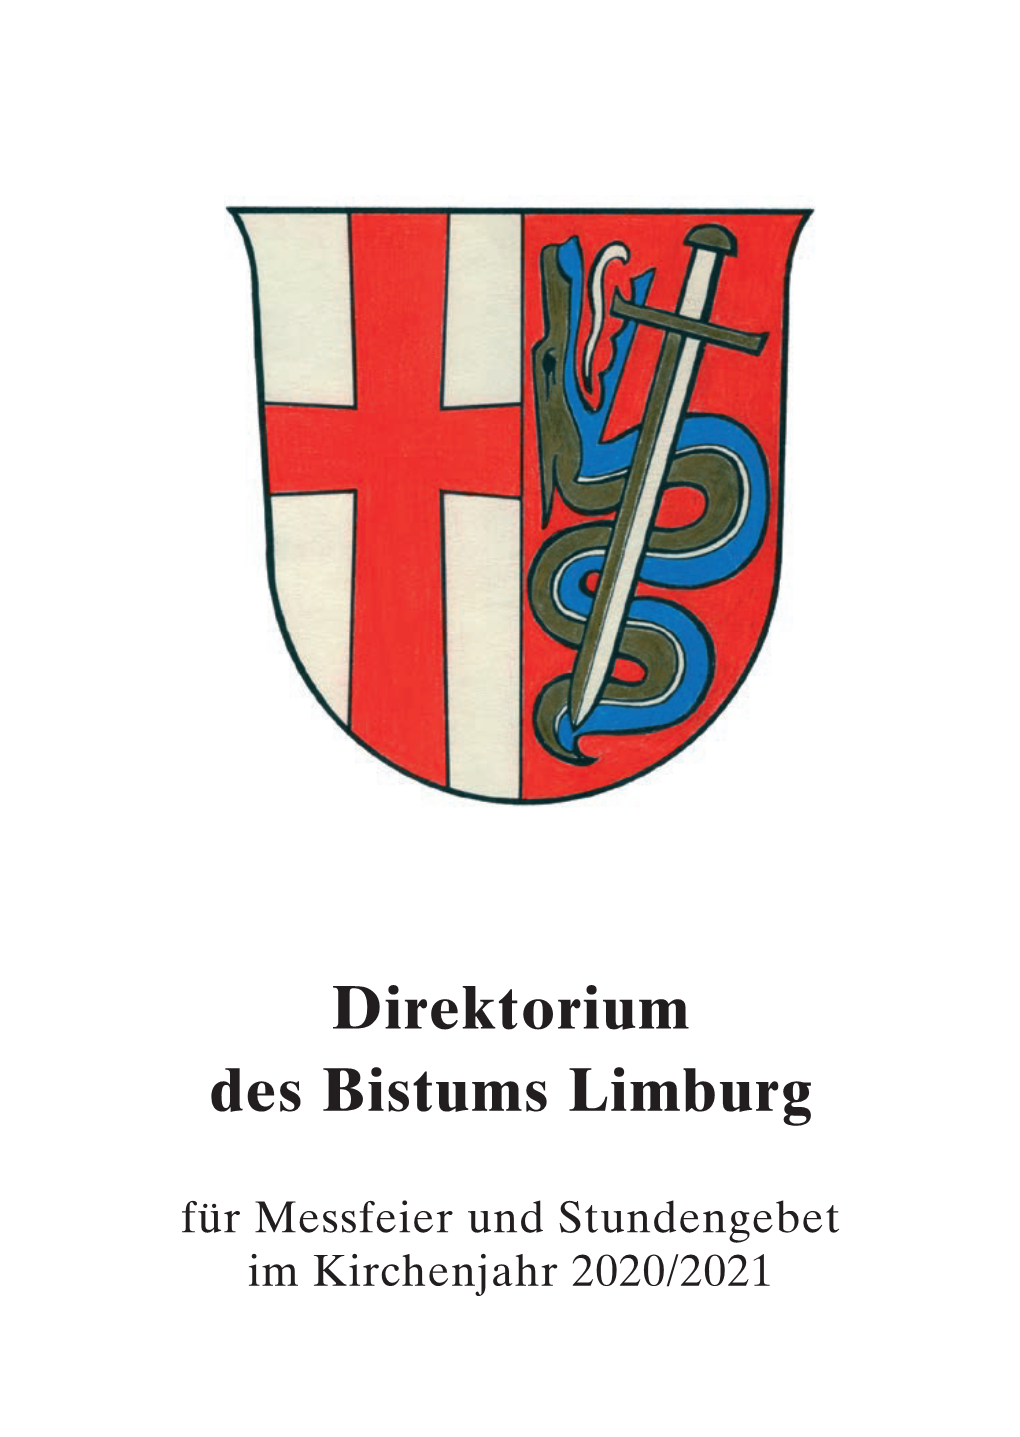 Direktorium Des Bistums Limburg 2020/2021